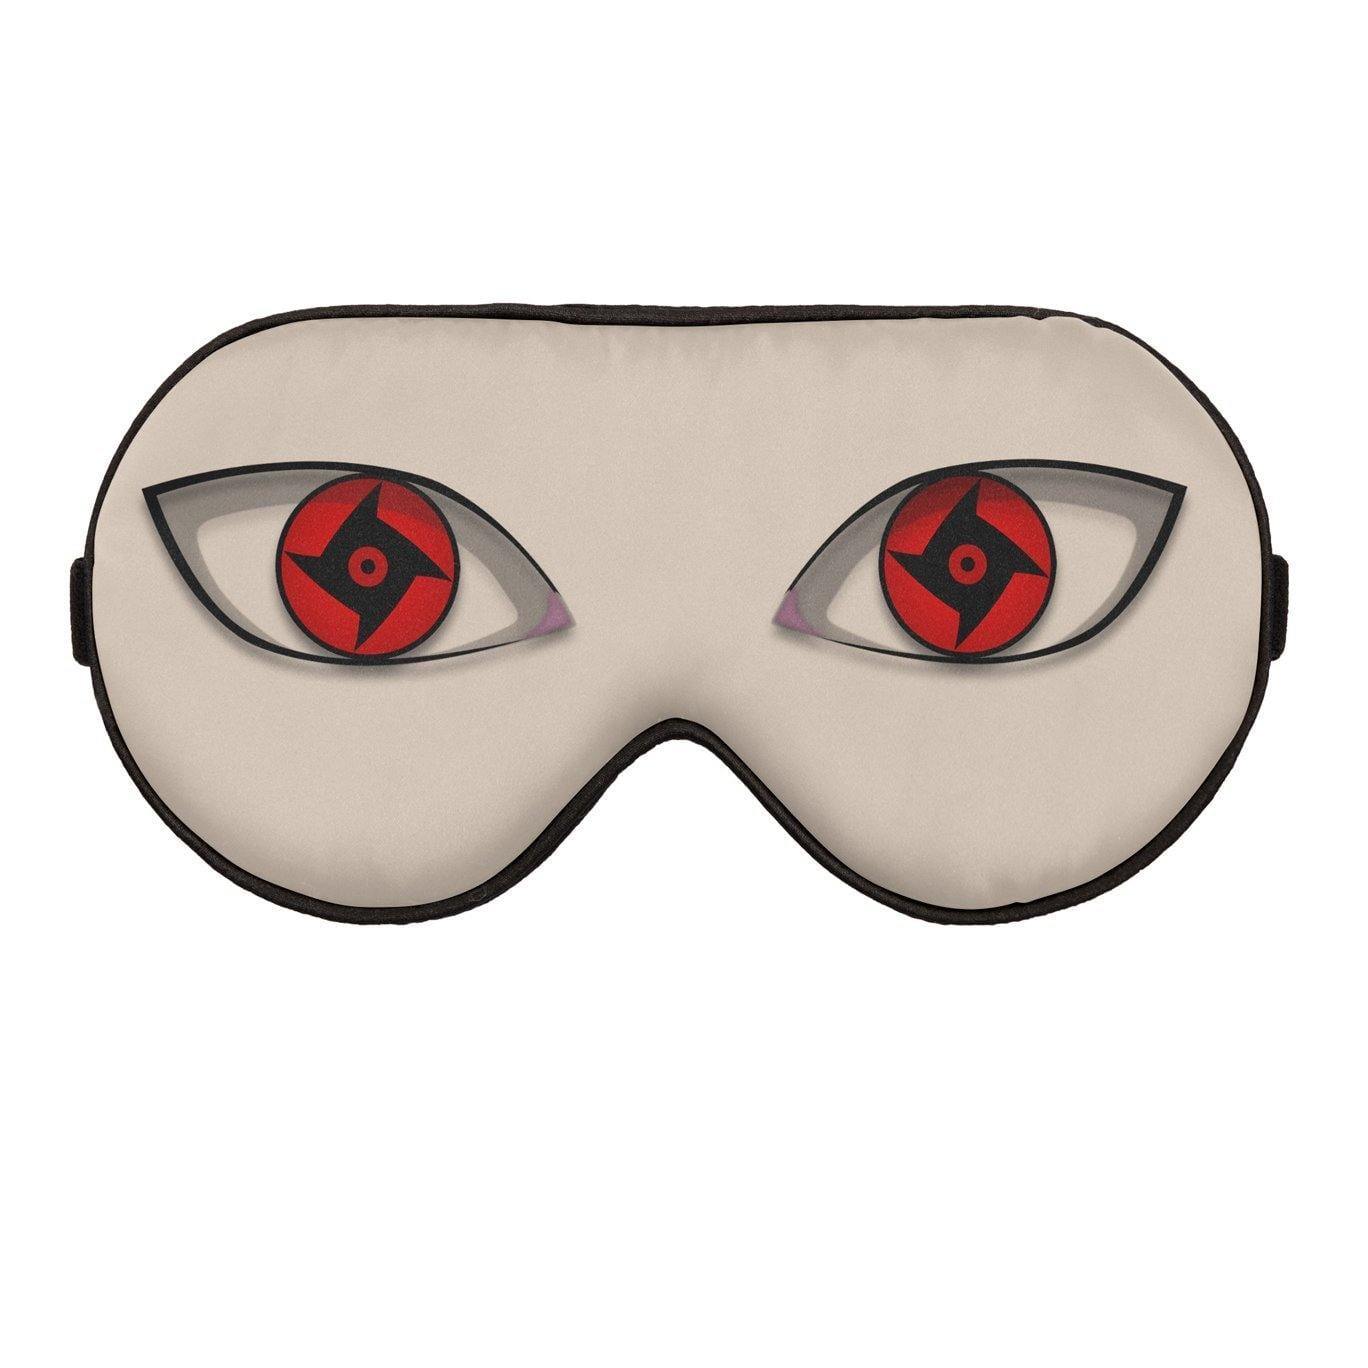 Shisui Mangekyou Sharingan Dojutsu Eyes Custom Anime Sleep Mask